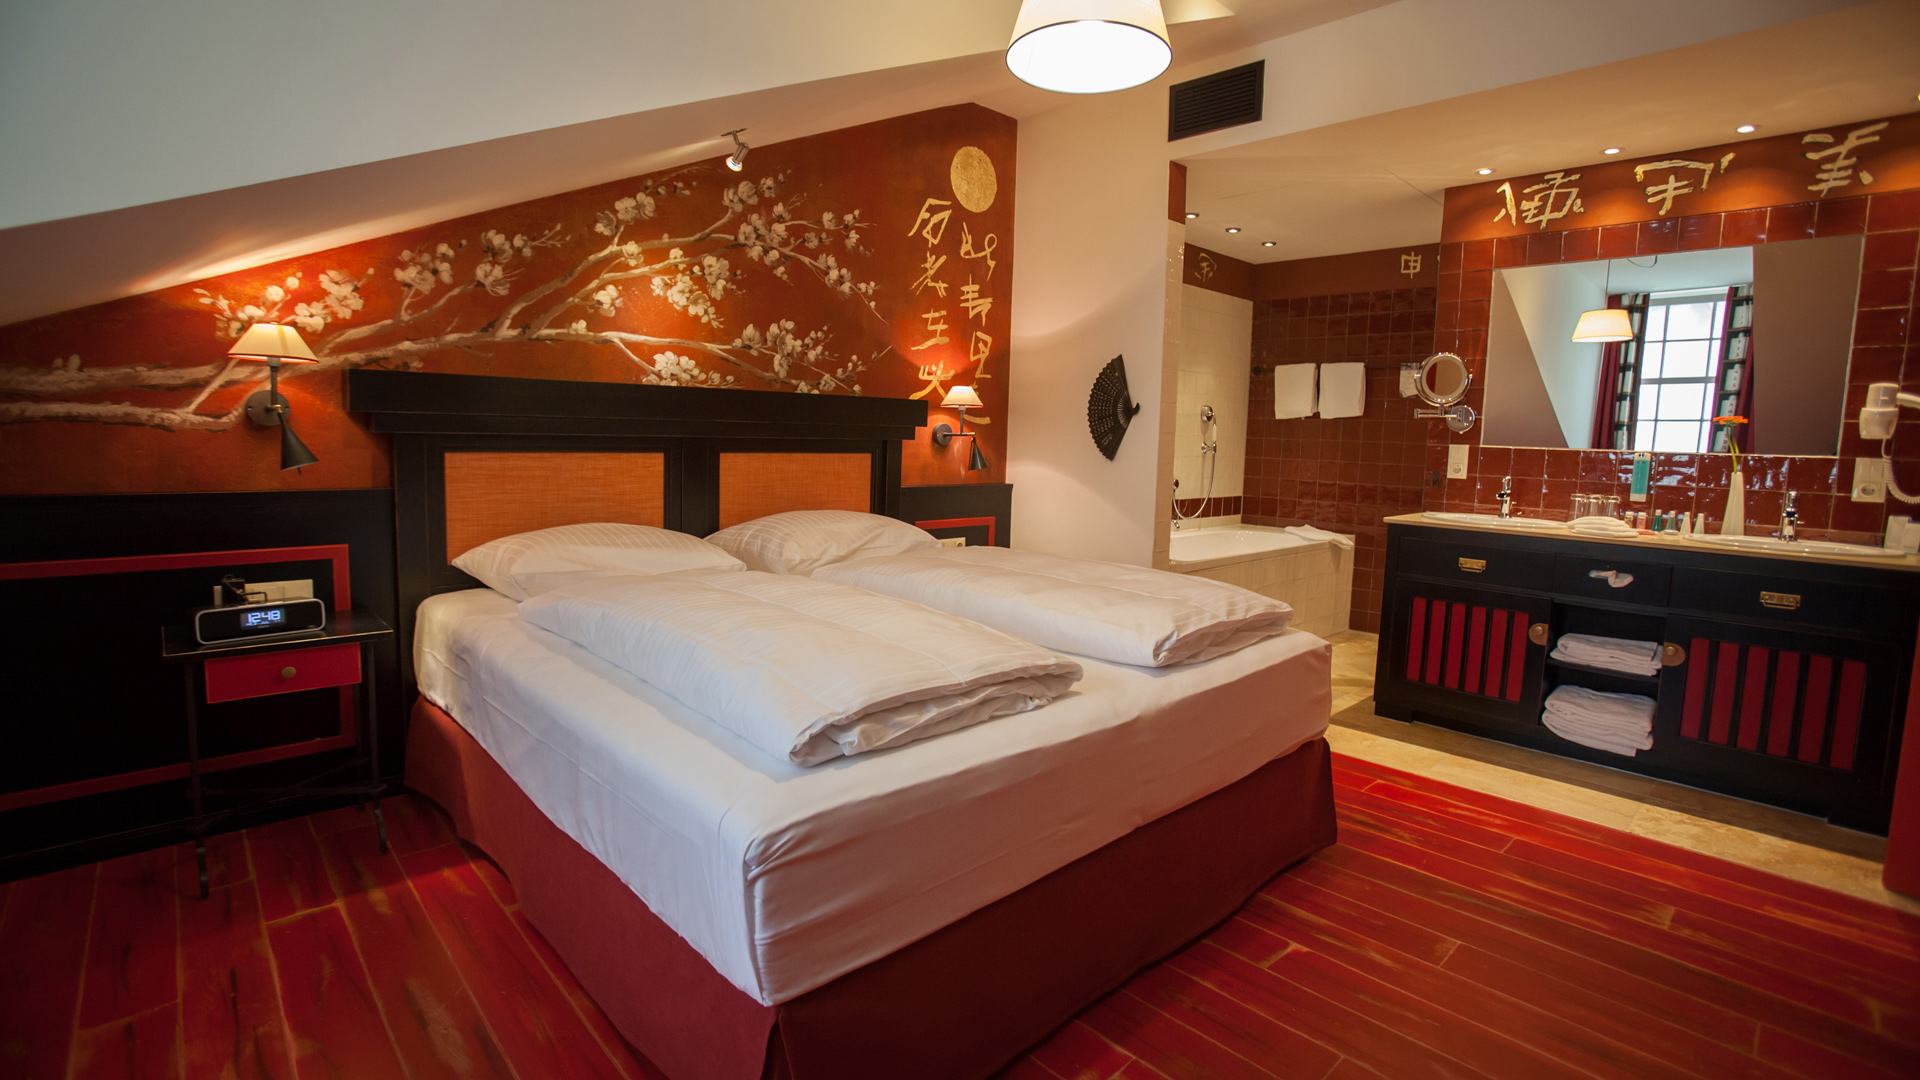 Hôtel de Pavie | Luxury Hotel in Saint-Emilion | Bell Tower House Rooms